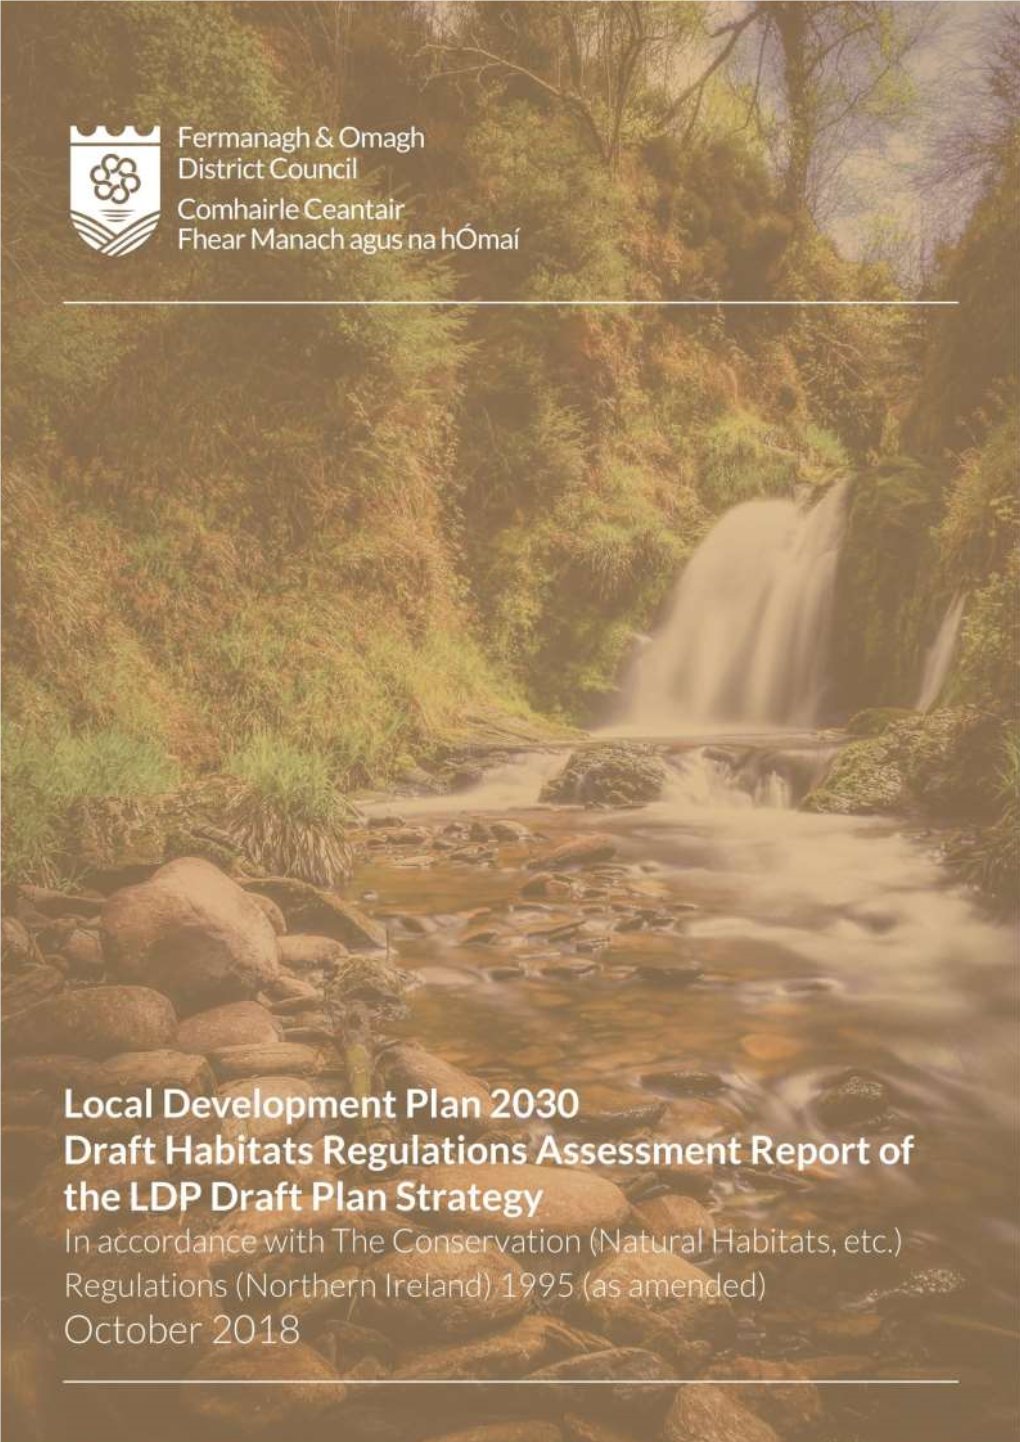 Habitats Regulations Assessment: the Approach